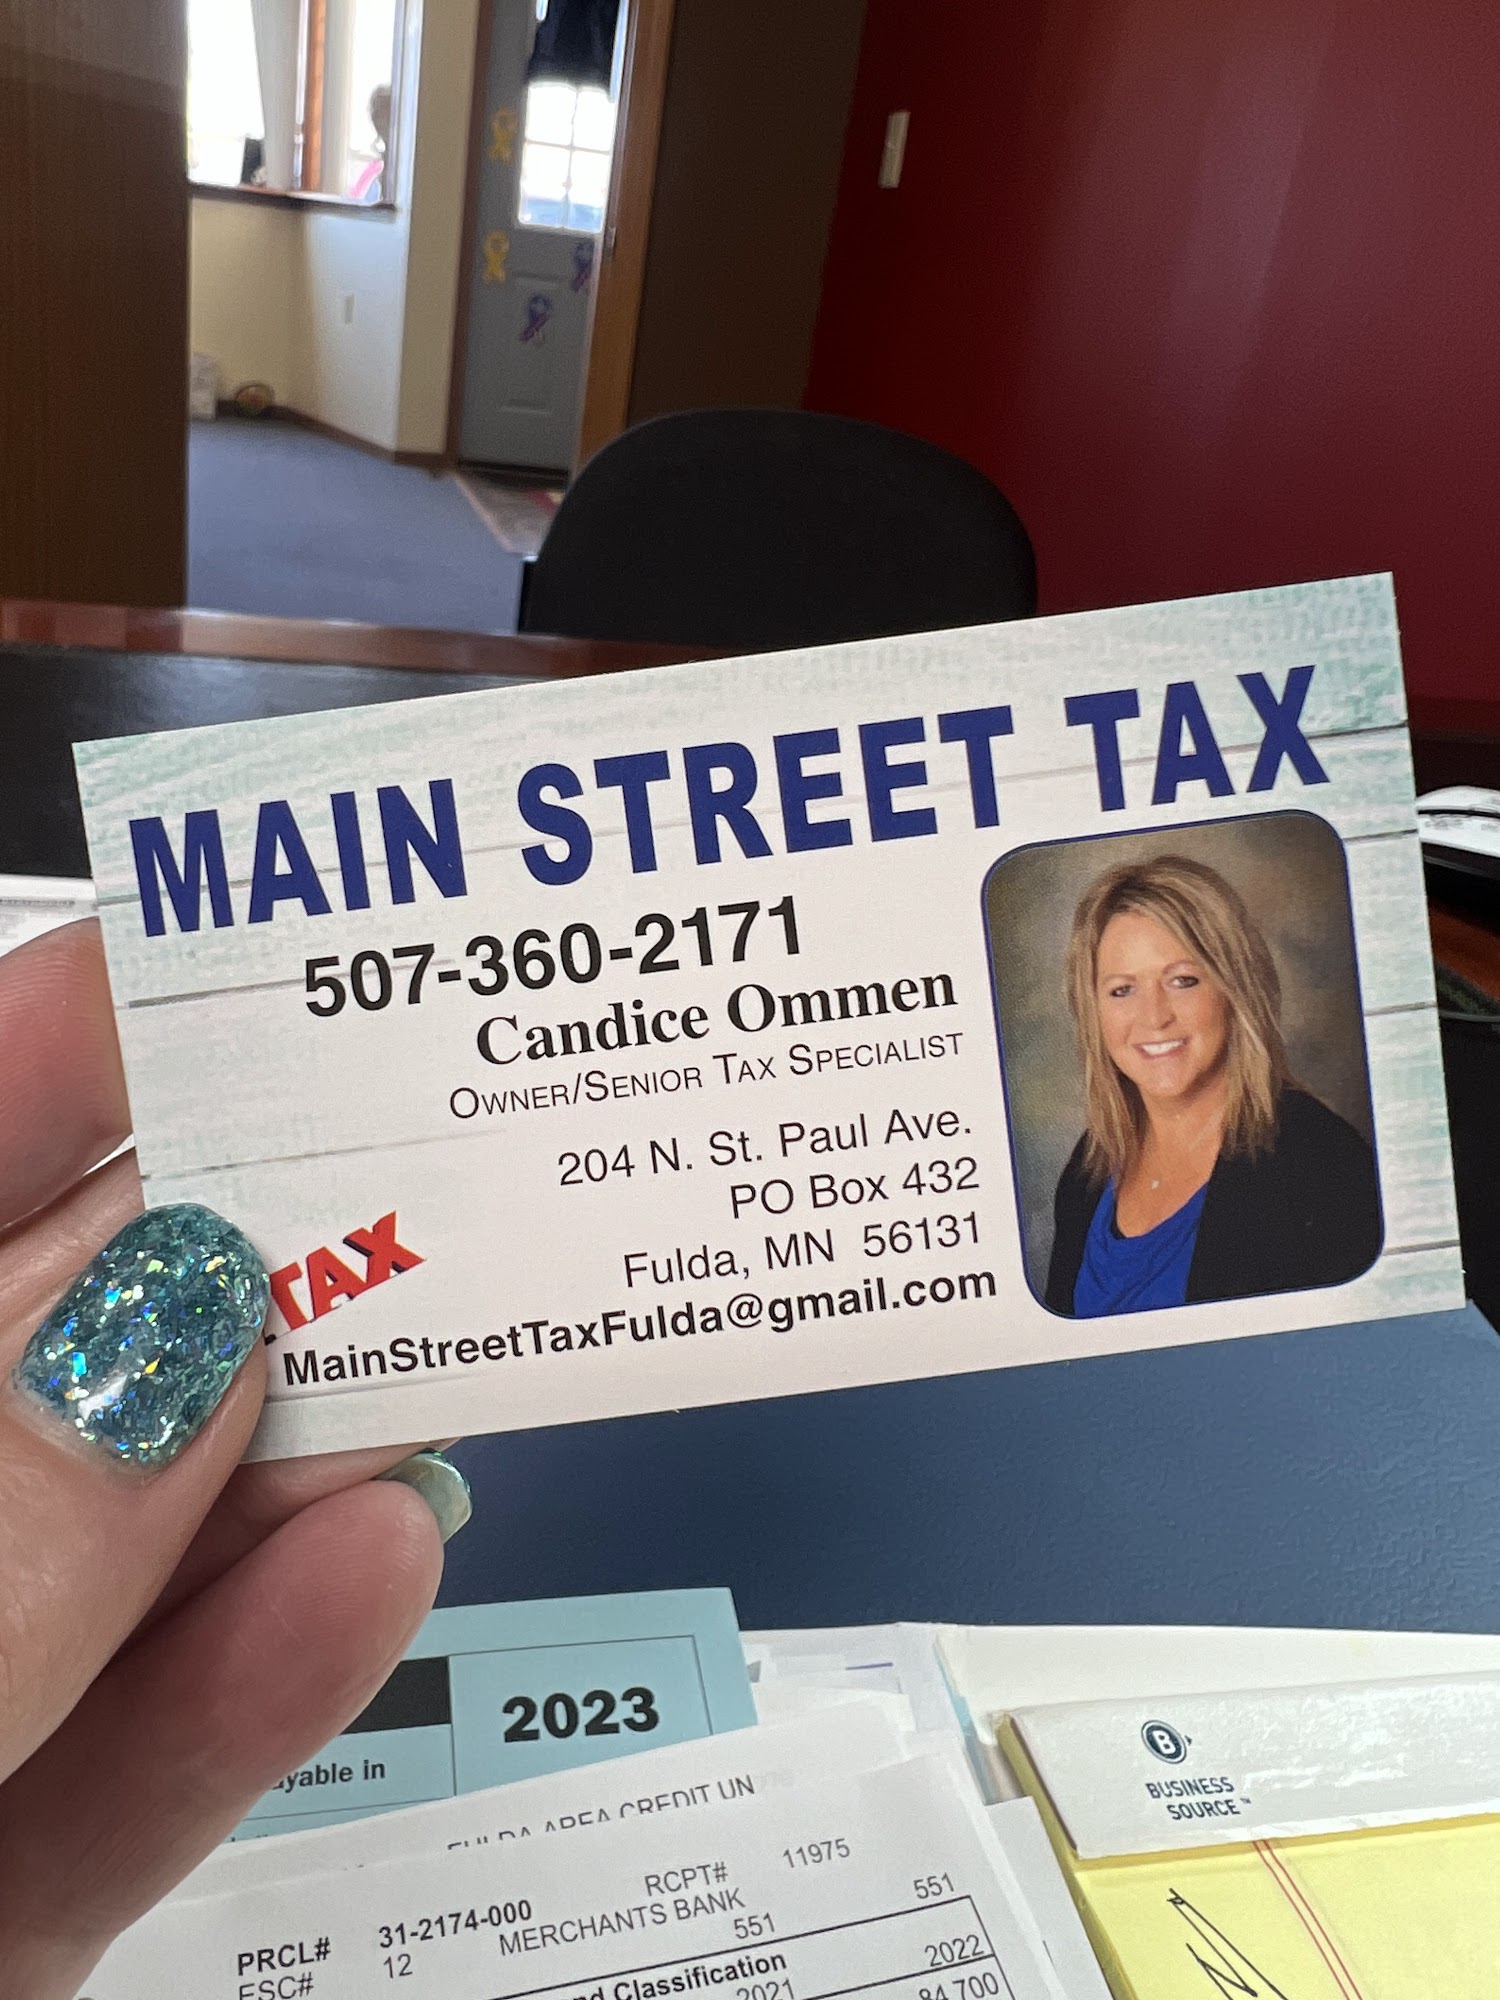 Main Street Tax Fulda 204 N St Paul Ave, Fulda Minnesota 56131